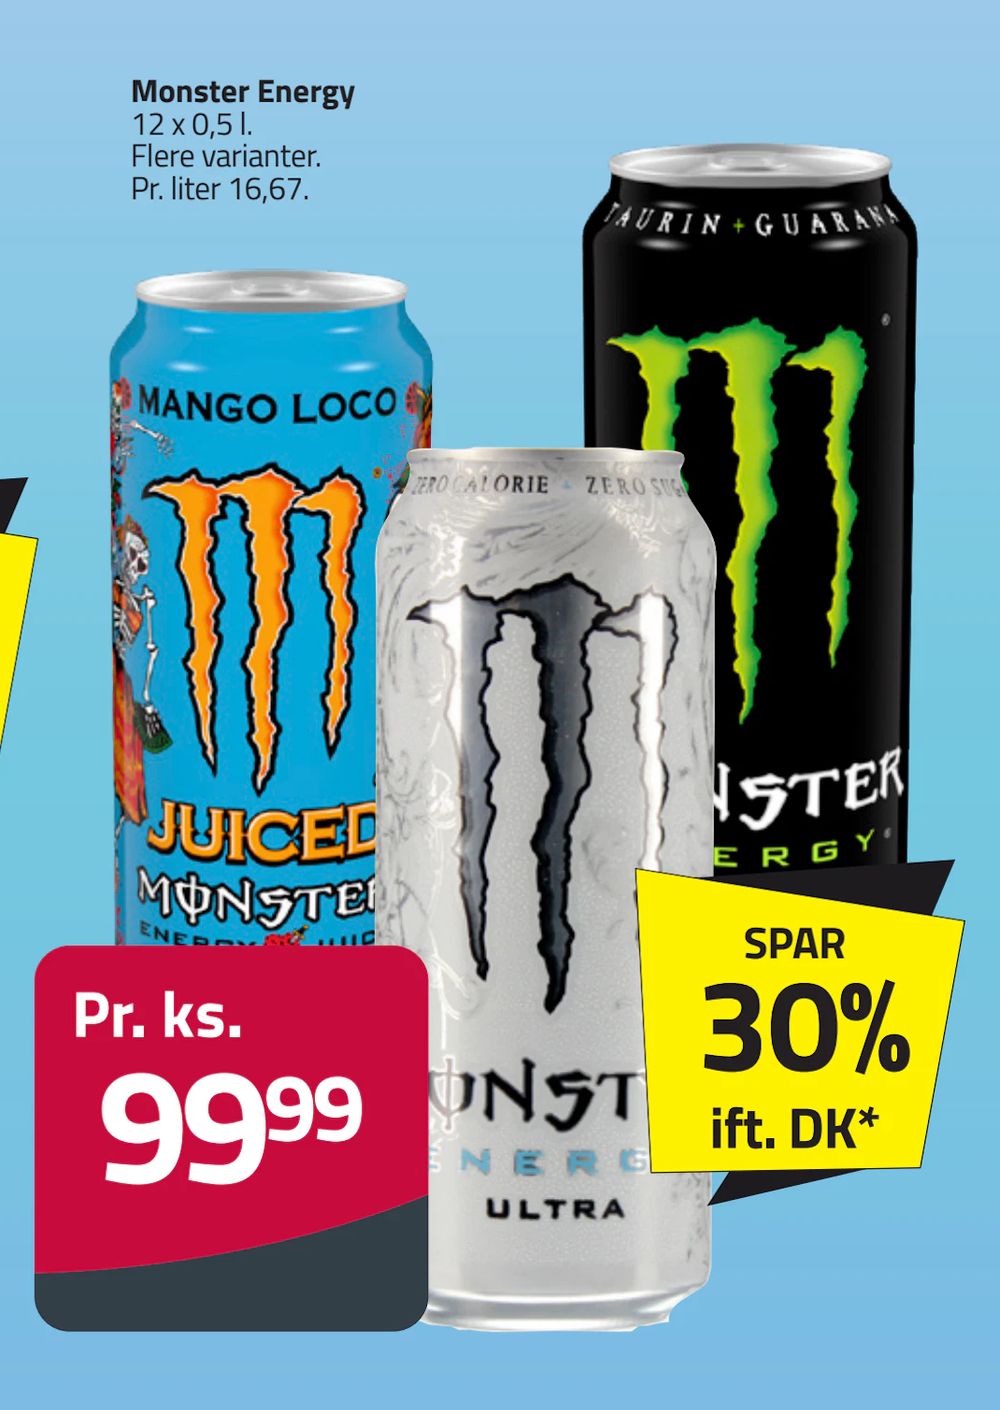 Tilbud på Monster Energy fra Fleggaard til 99,99 kr.